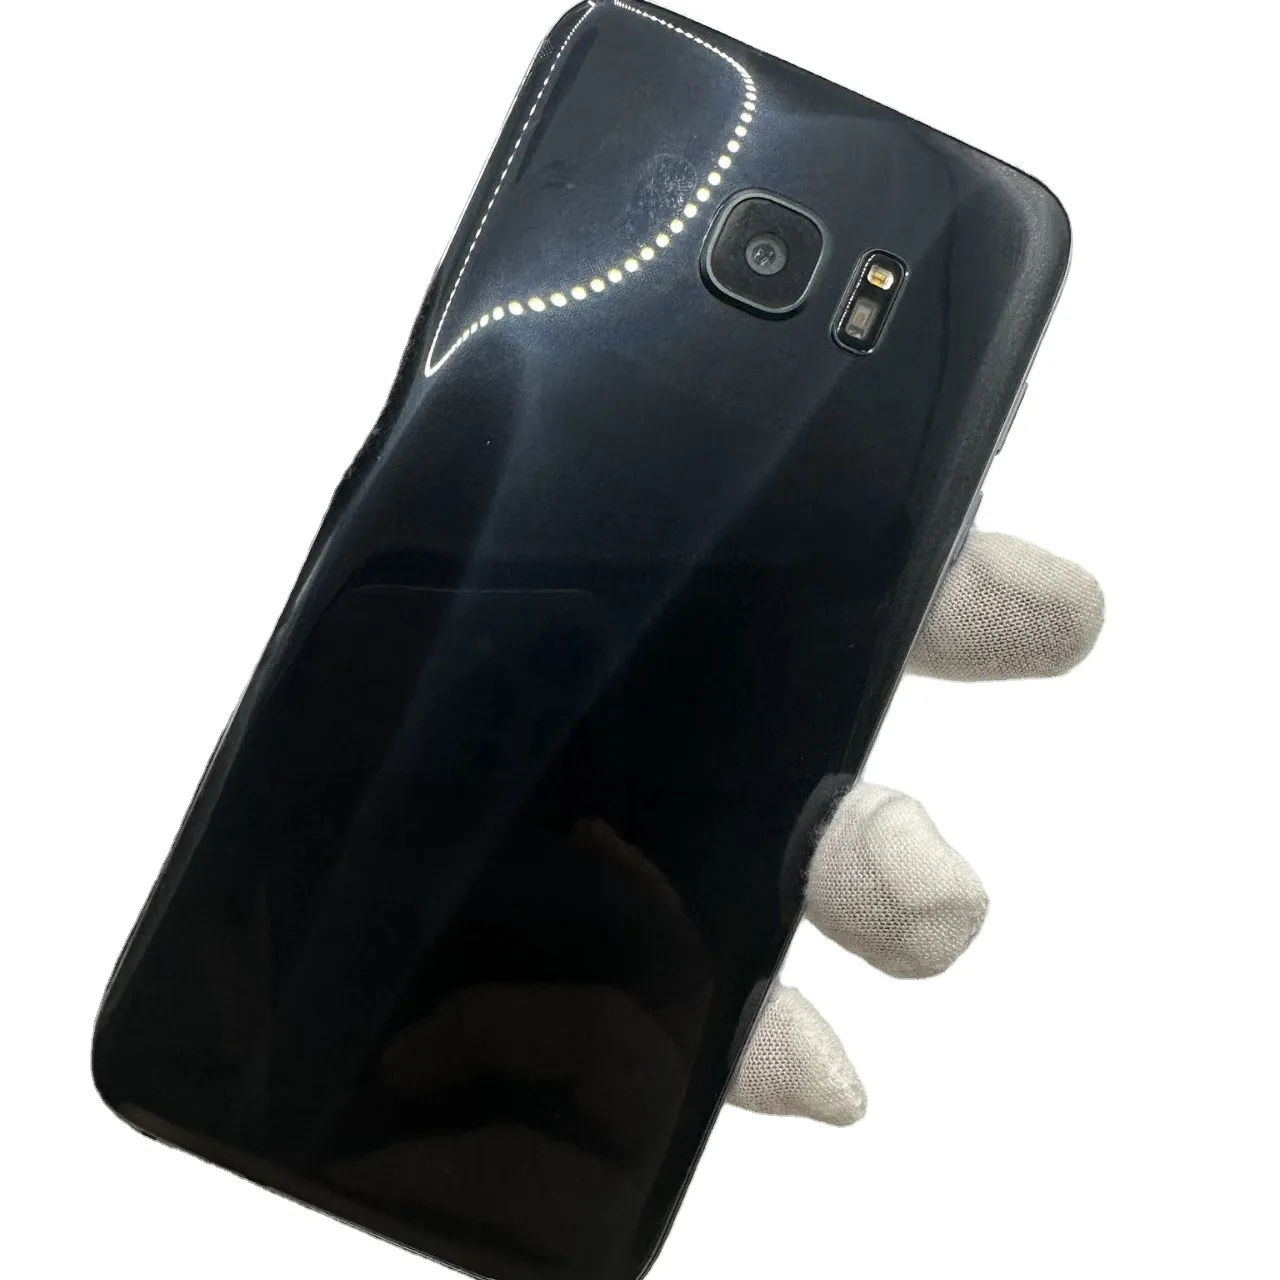 Teléfonos Android usados baratos para Samsung Galaxy S7 Edge S8 S9 S9plus S10 S20 S21 teléfonos usados de segunda mano